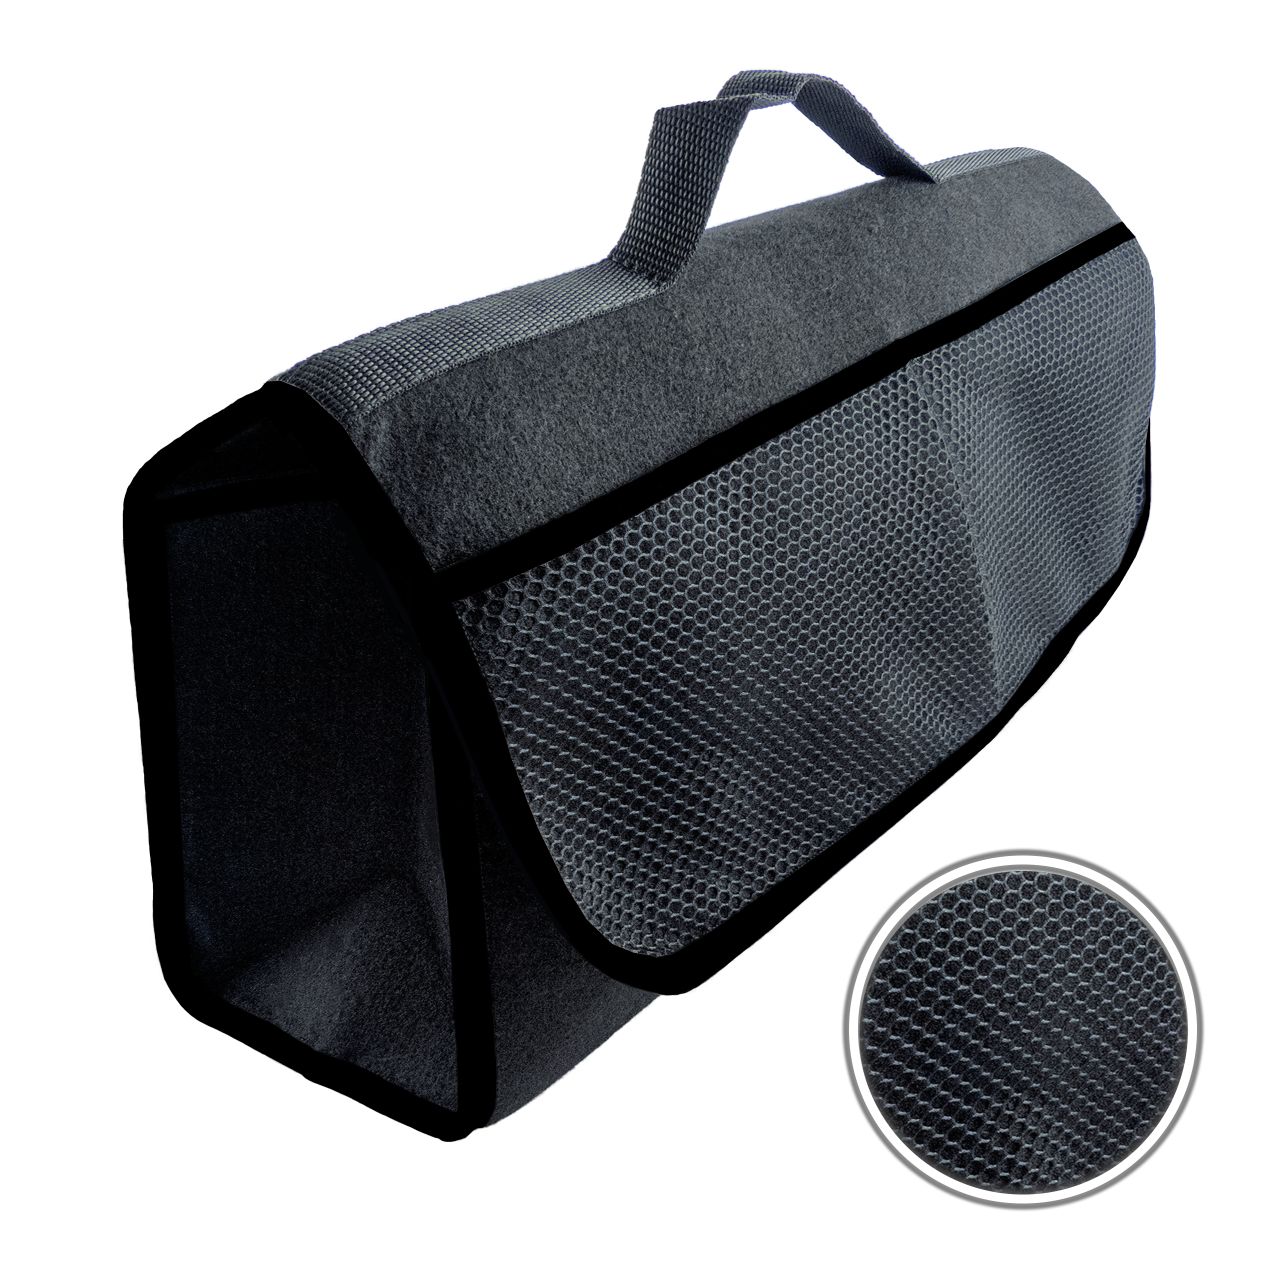 Kofferraumtasche Schwarz mit Klettbefestigung für einen sicheren Halt im Kofferraum-0